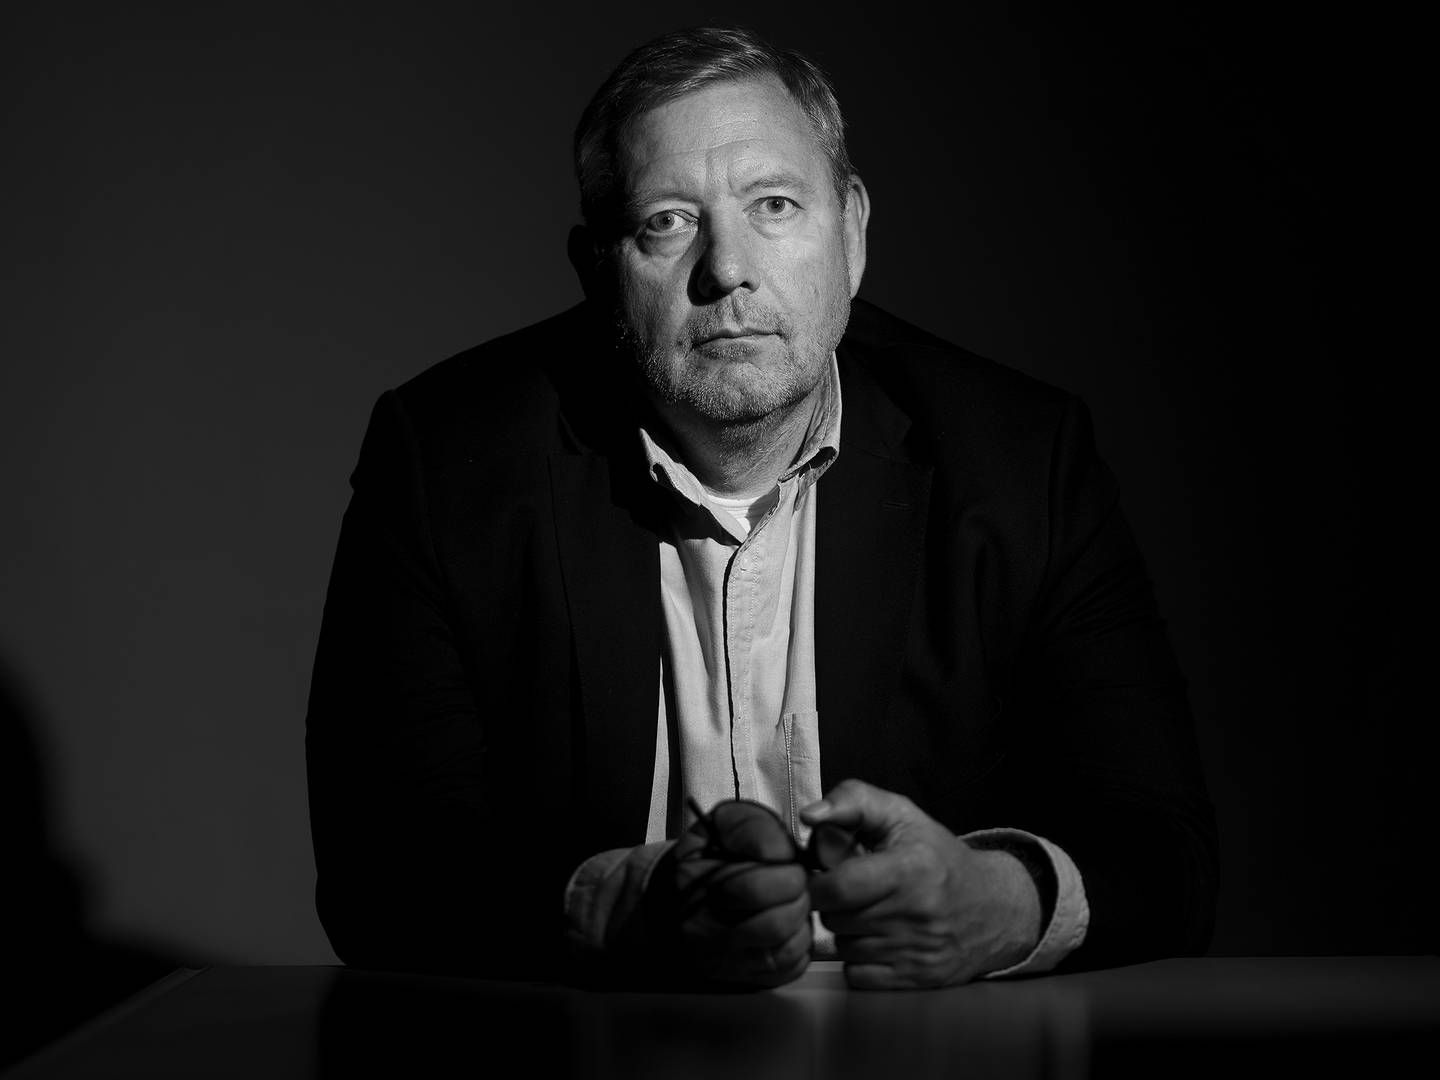 Adm. direktør i Sjællandske Medier, Jens Nicolaisen. | Foto: Thomas Olsen, Sjællandske Medier